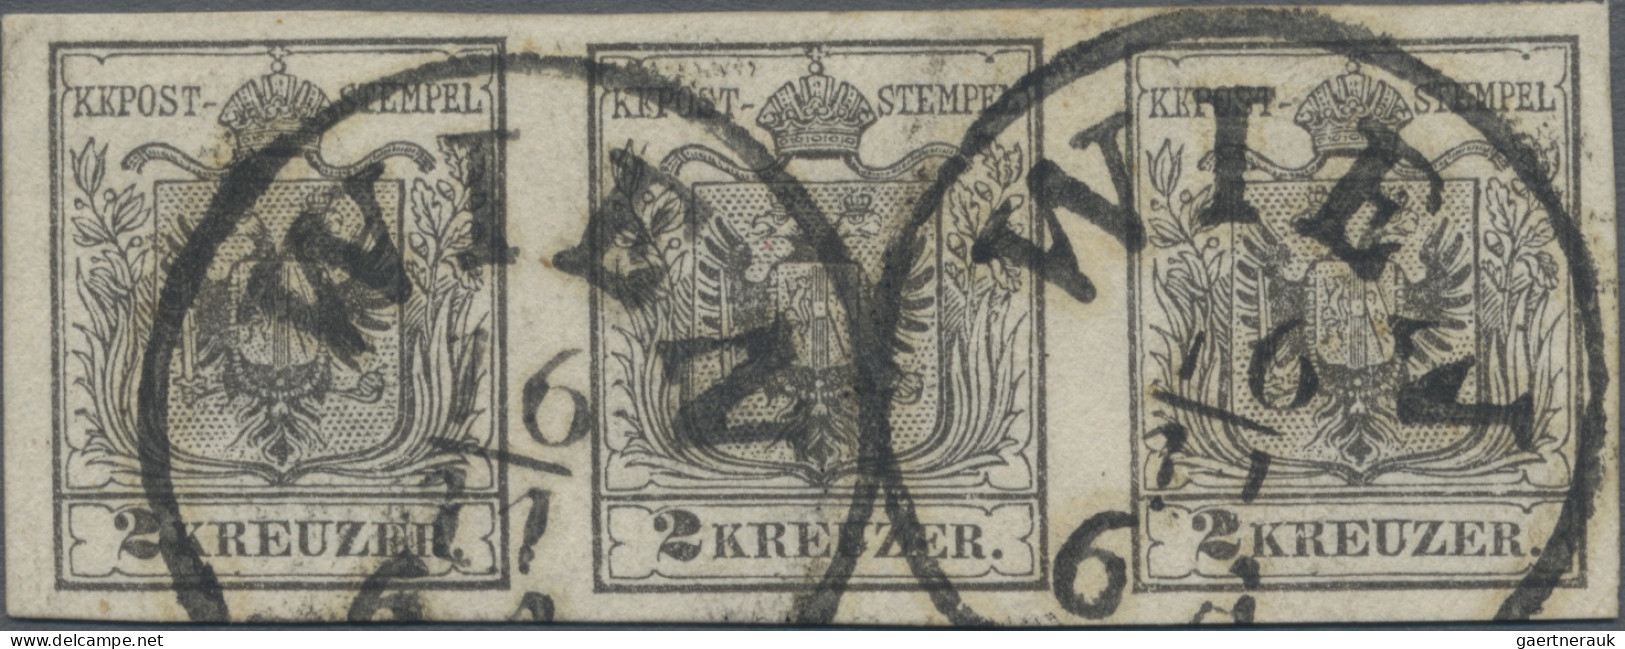 Österreich: 1850, 2 Kreuzer Schwarz, Maschinenpapier, Type IIIb, Feinstdruck, Wa - Usados